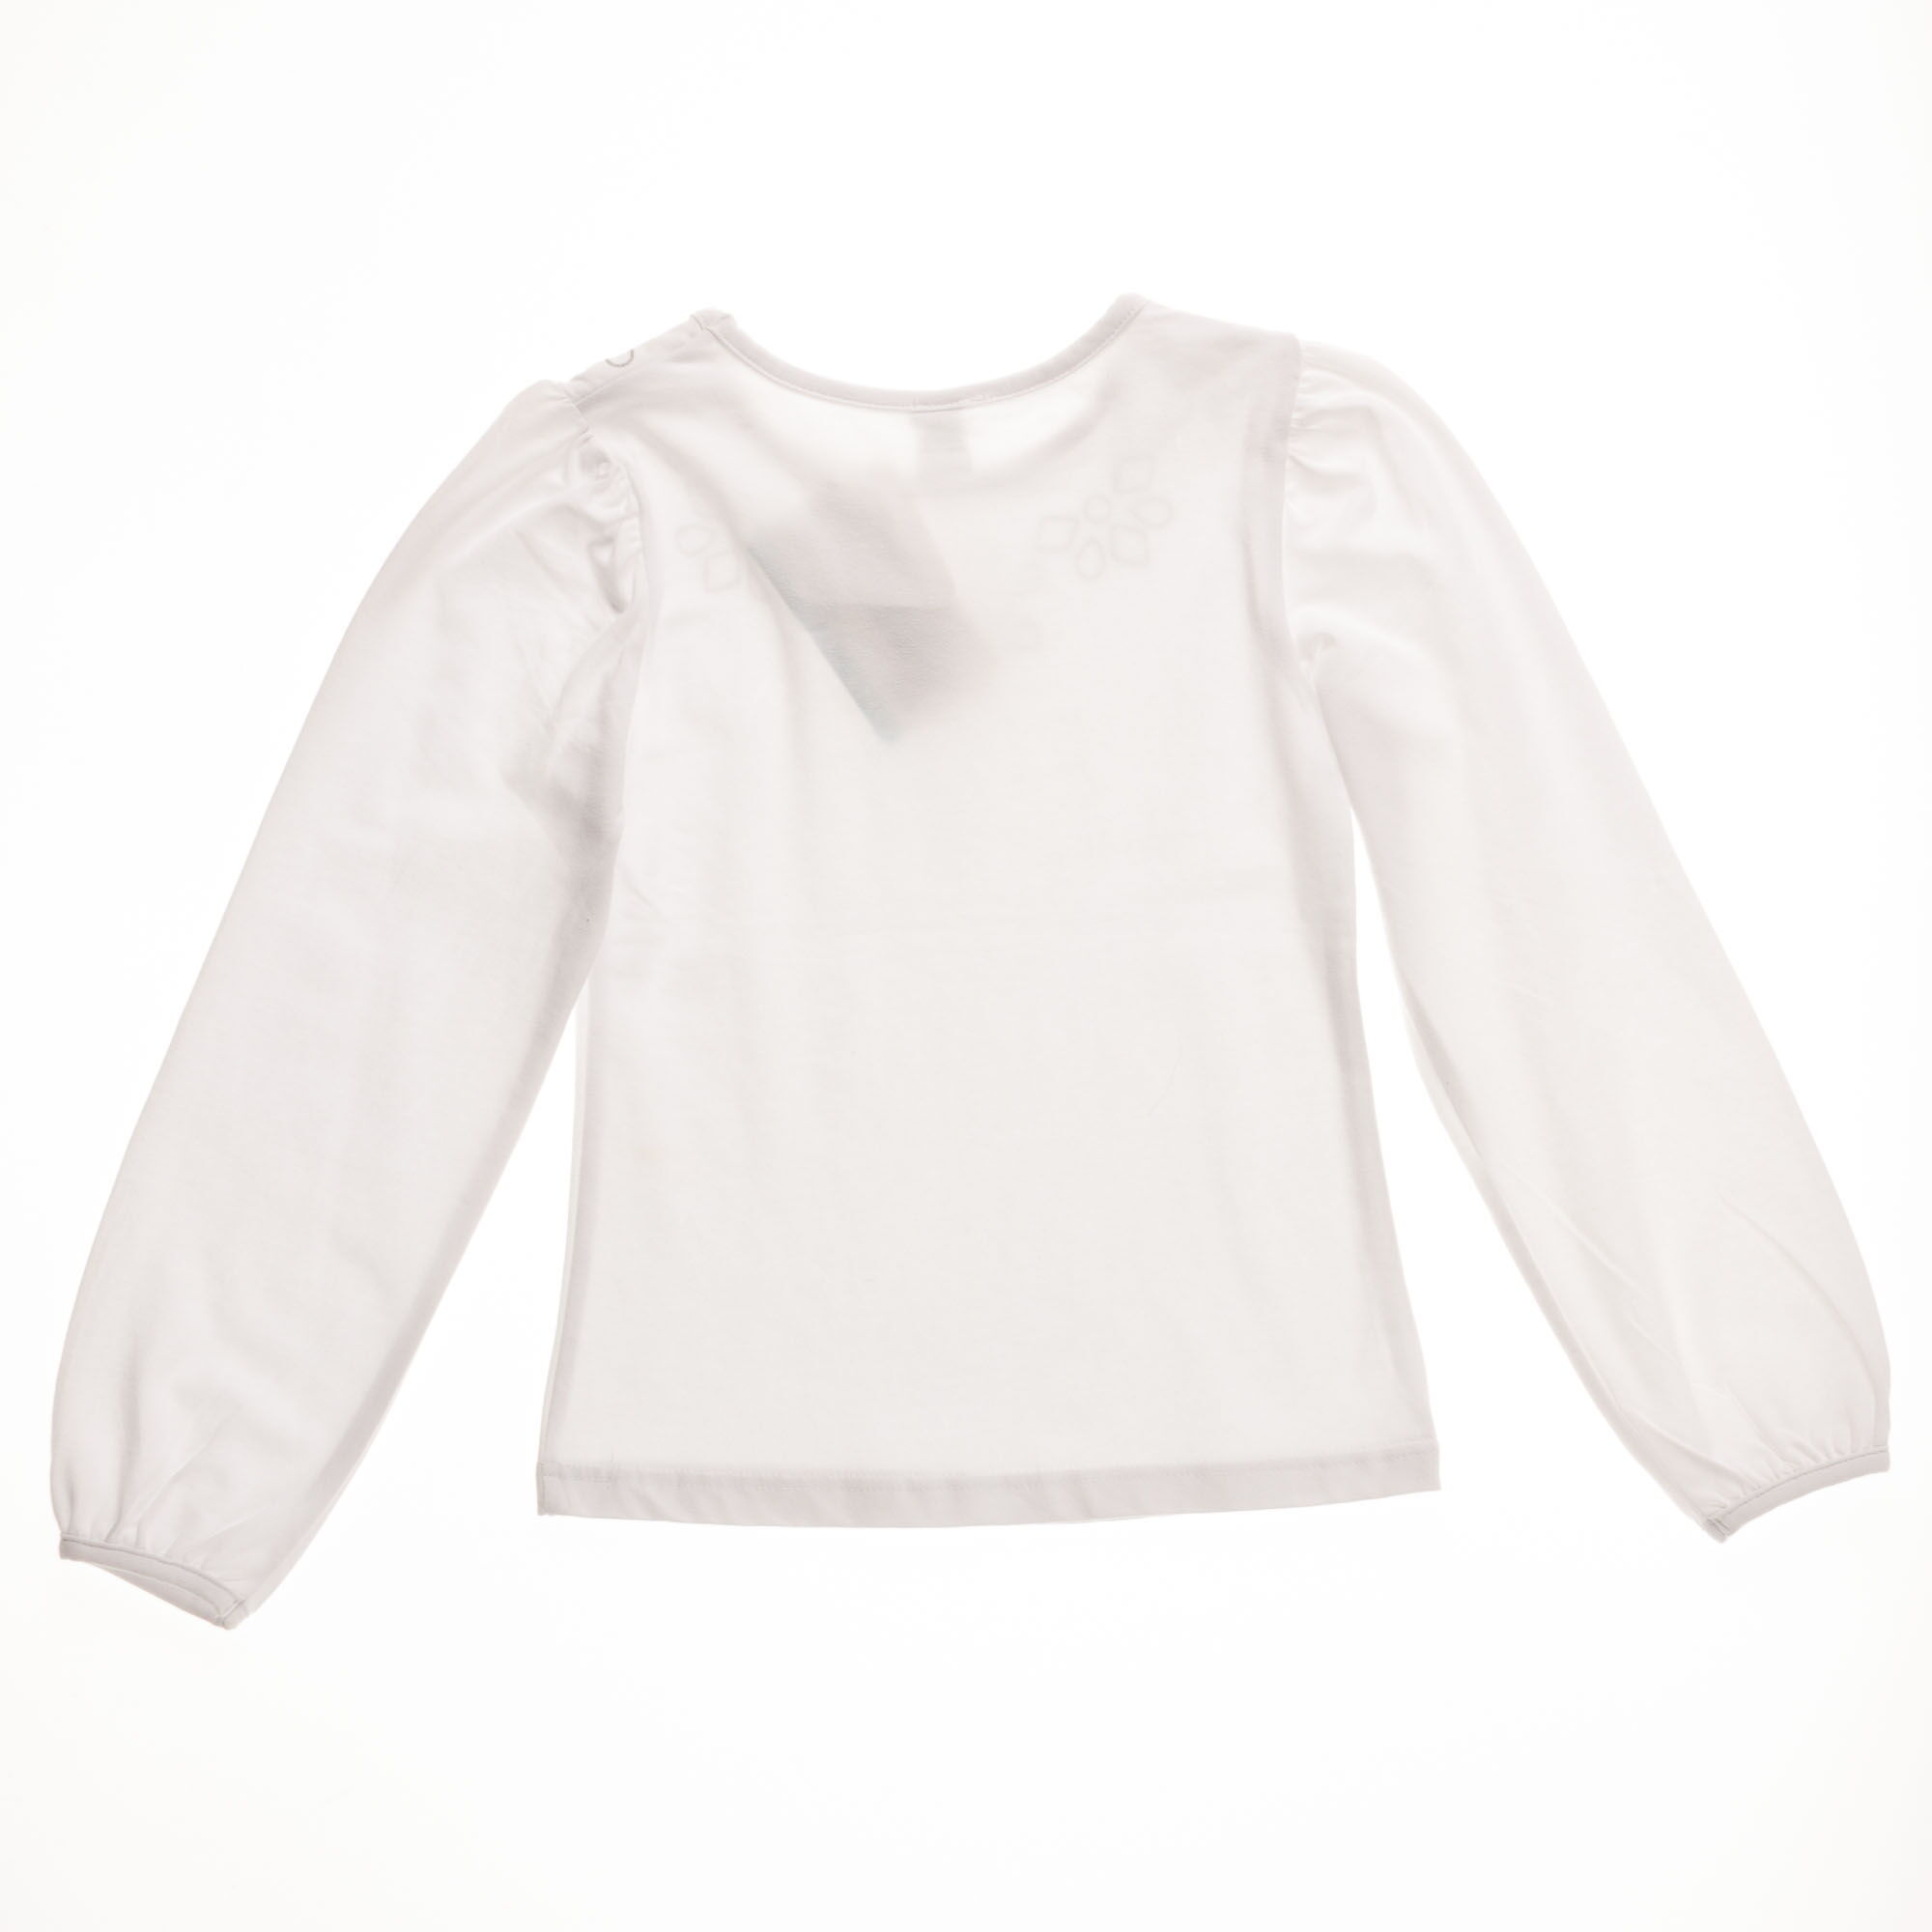 Блузка с длинным рукавом для девочки Valeri tex белая 1542-55-042 - размеры